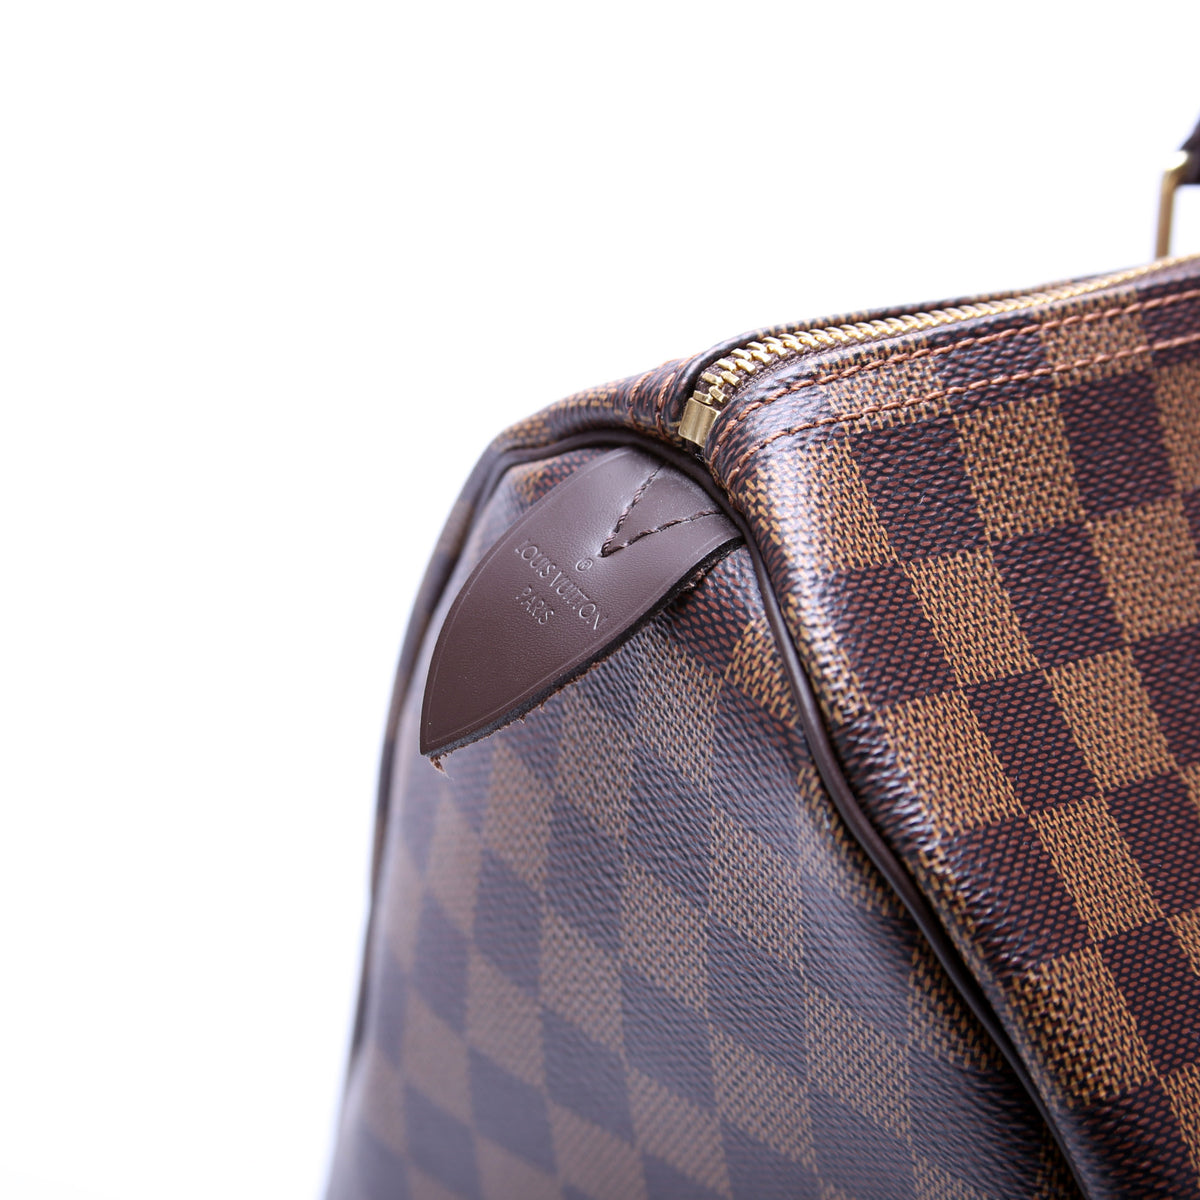 Speedy 35 Bandouliere Damier Azur – Keeks Designer Handbags